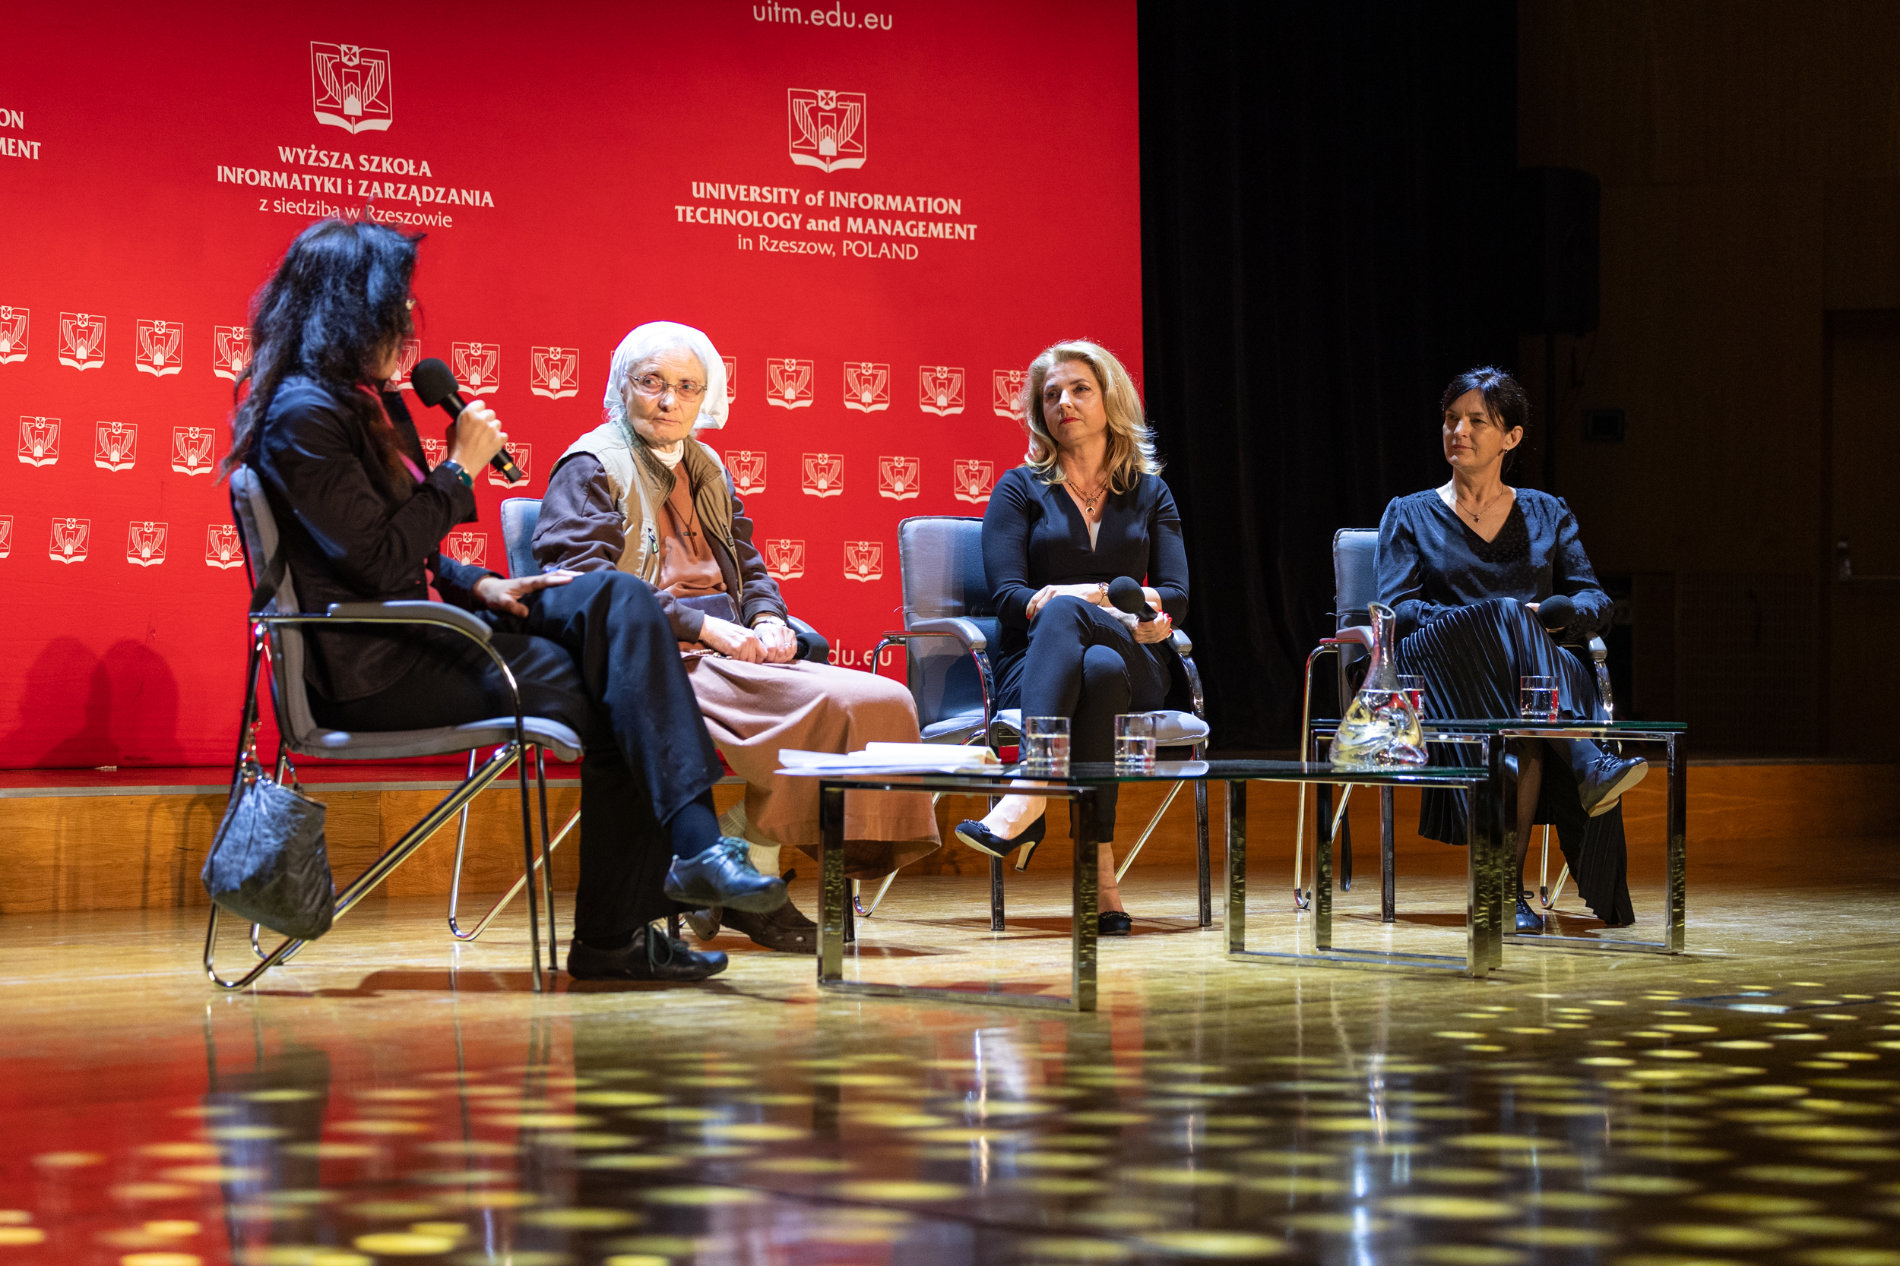 Scena - na krzesłach siedzą cztery kobiety. W tle rozstawiony jest duży, czerwony baner Wyższej Szkoły Informatyki i Zarządzania z siedzibą w Rzeszowie